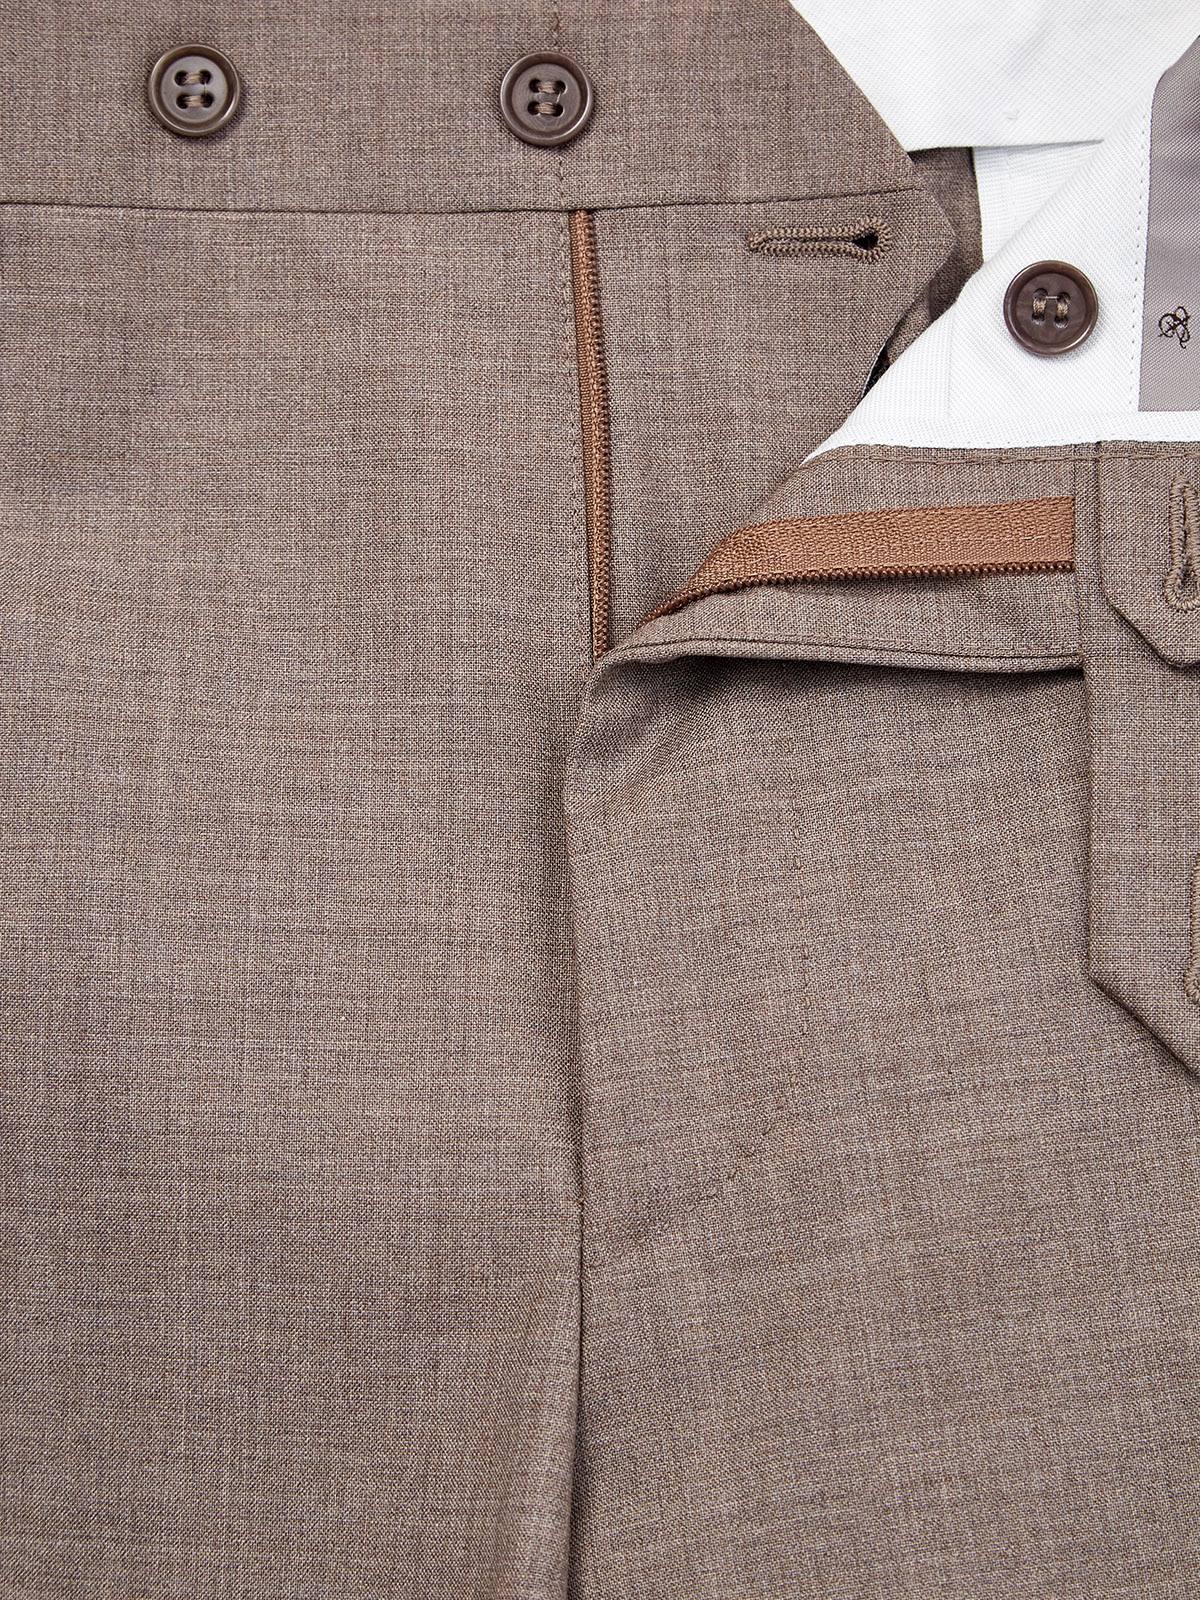 Прямые брюки из костюмной шерсти со стрелками CANALI, цвет бежевый, размер 48;50;52;54;56 - фото 7